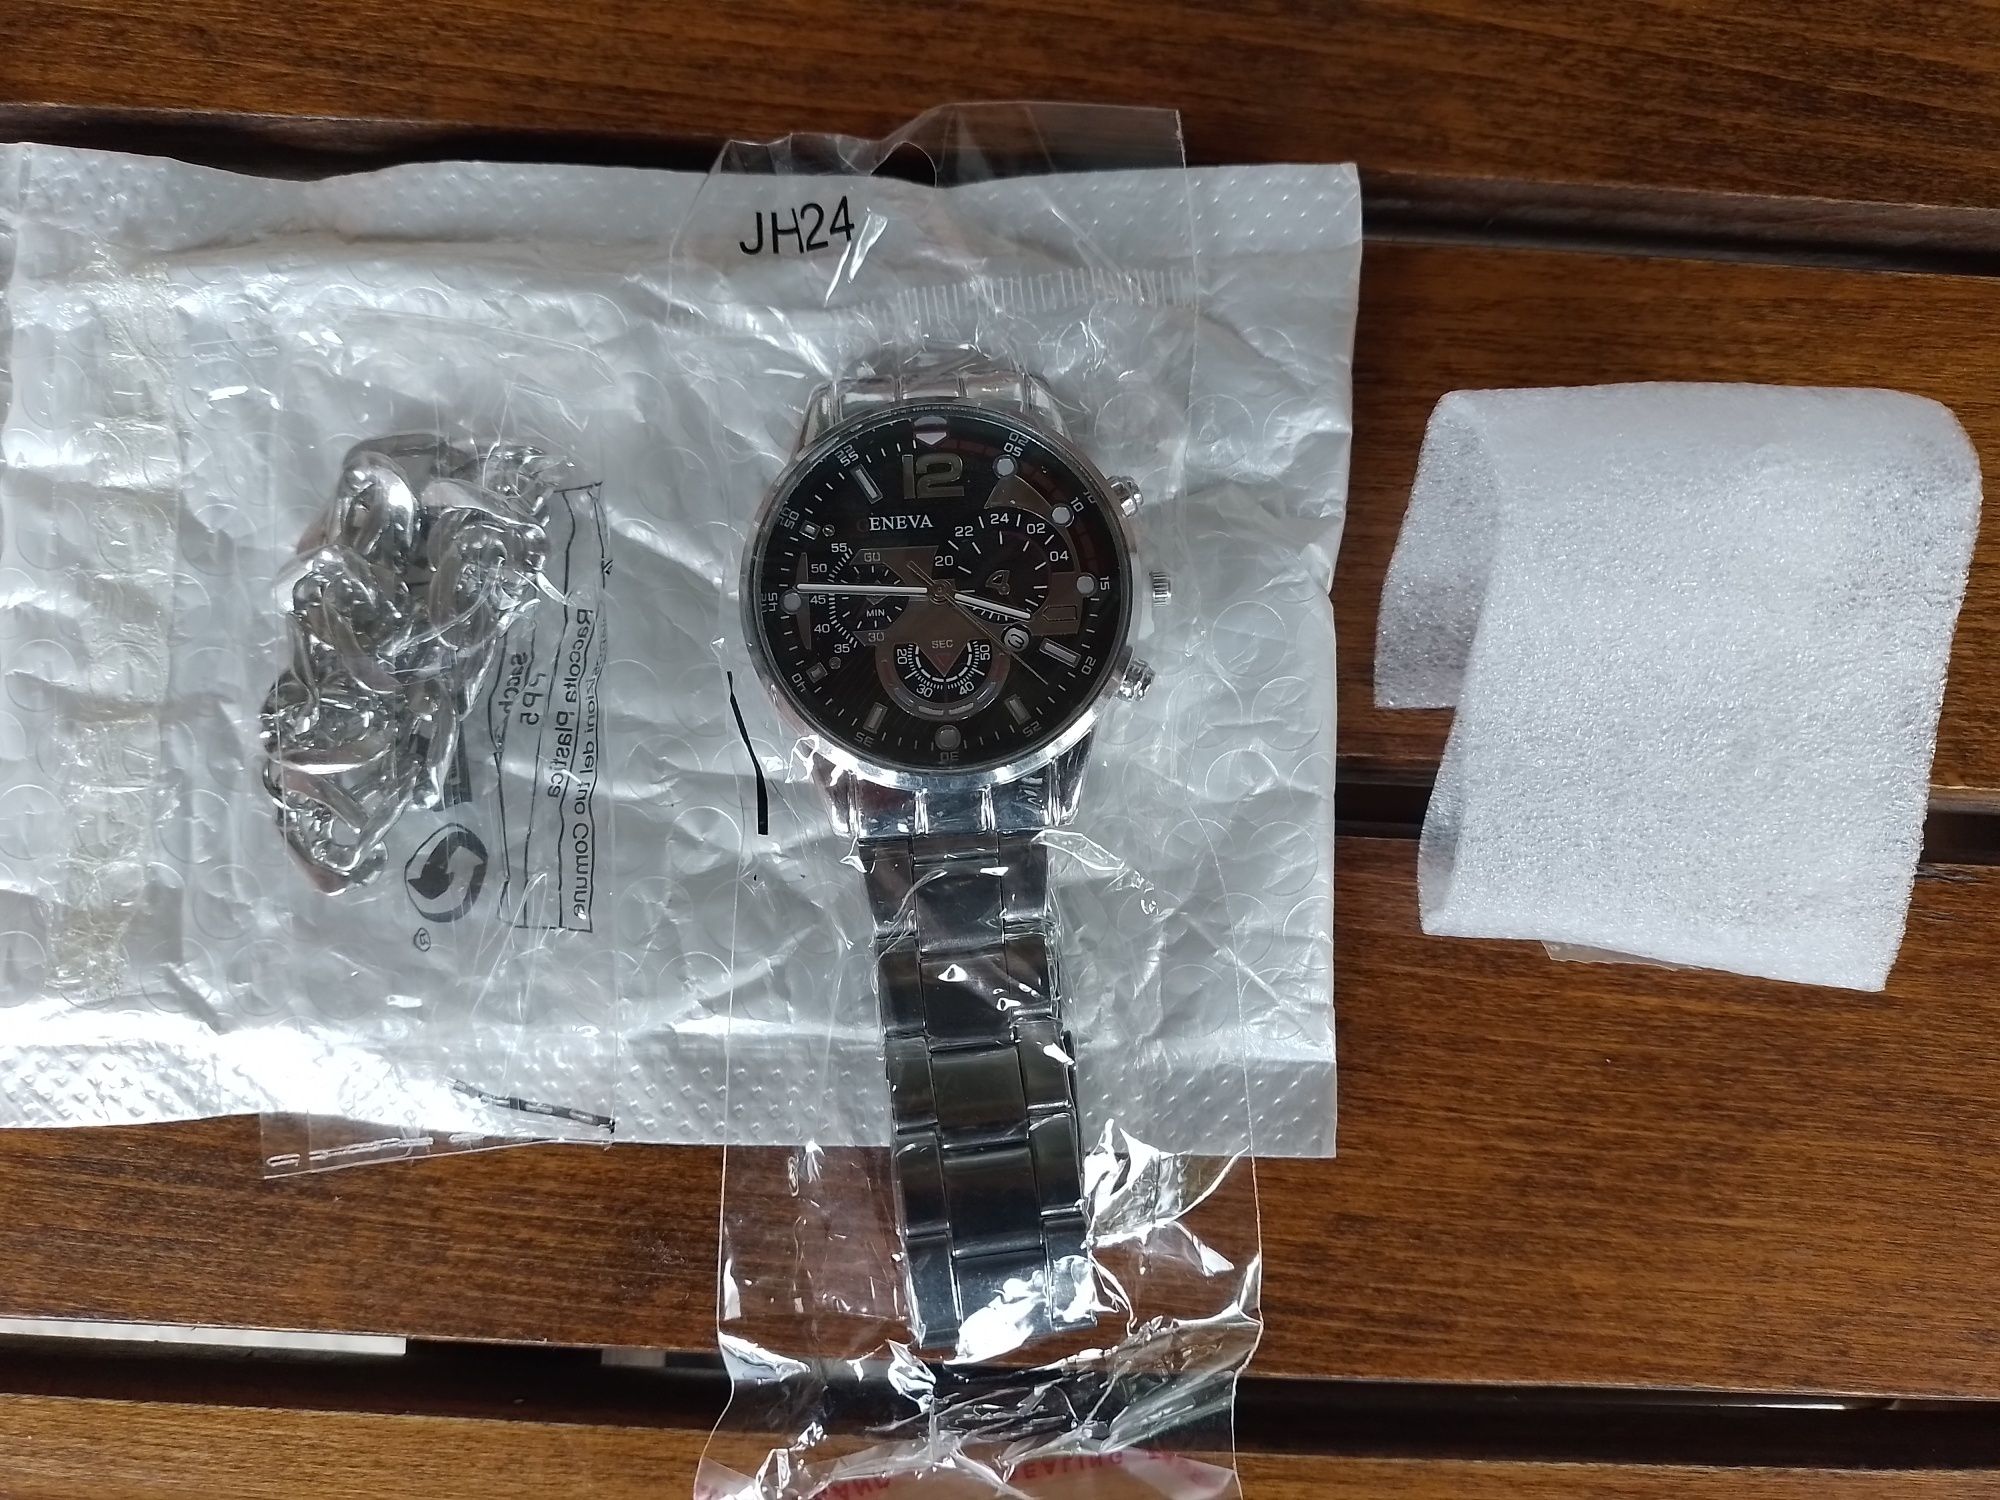 Мъжки кварцов ръчен часовник с дата/датник Geneva +гривна в същия стил